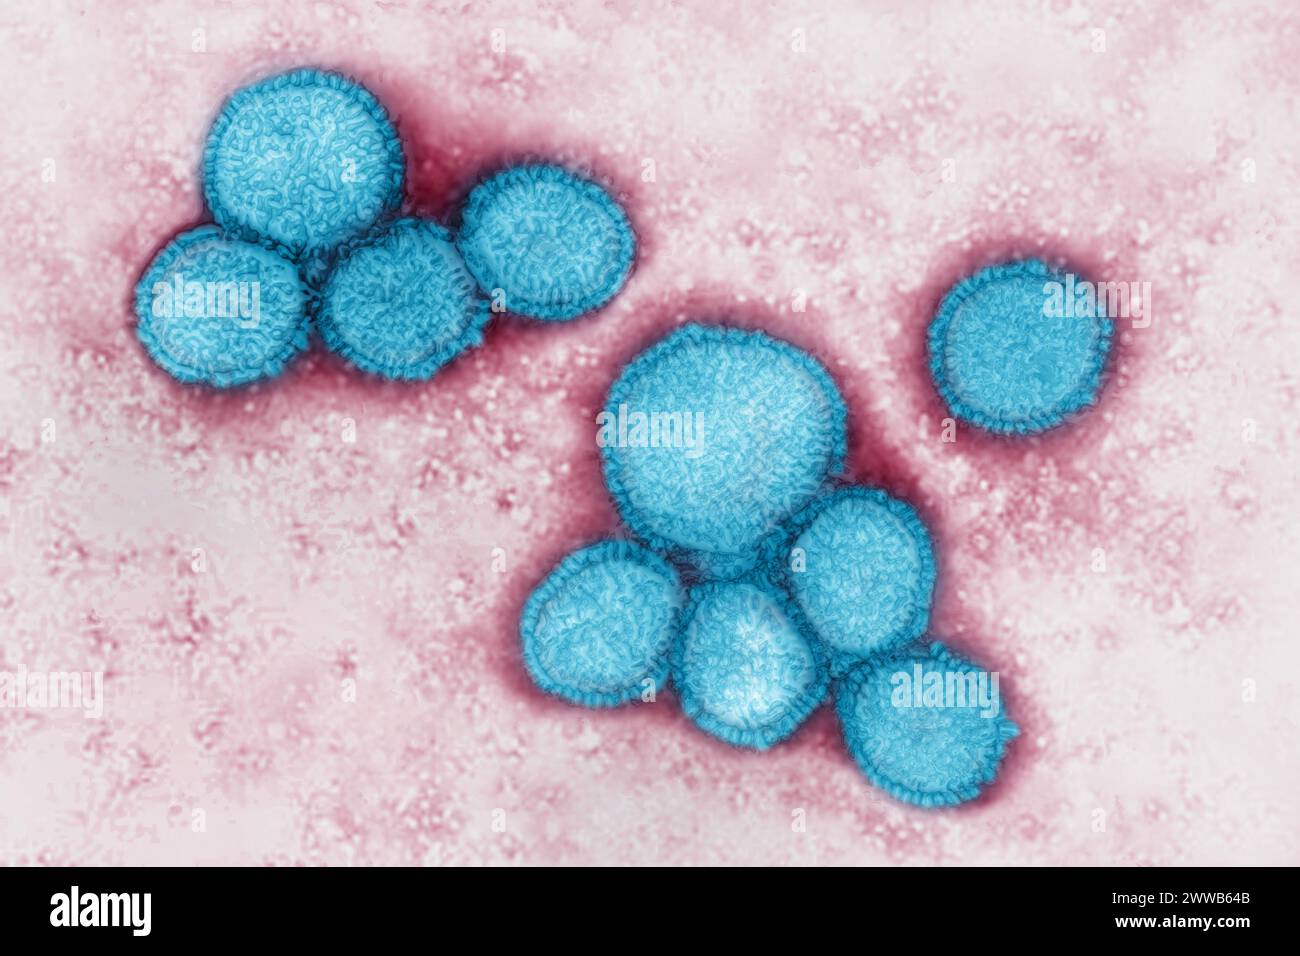 Coronavirus (CoV). viruses of the Coronaviridae family and the Orthocoronavirinae subfamily. It is a pathogen of respiratory syndromes. Stock Photo